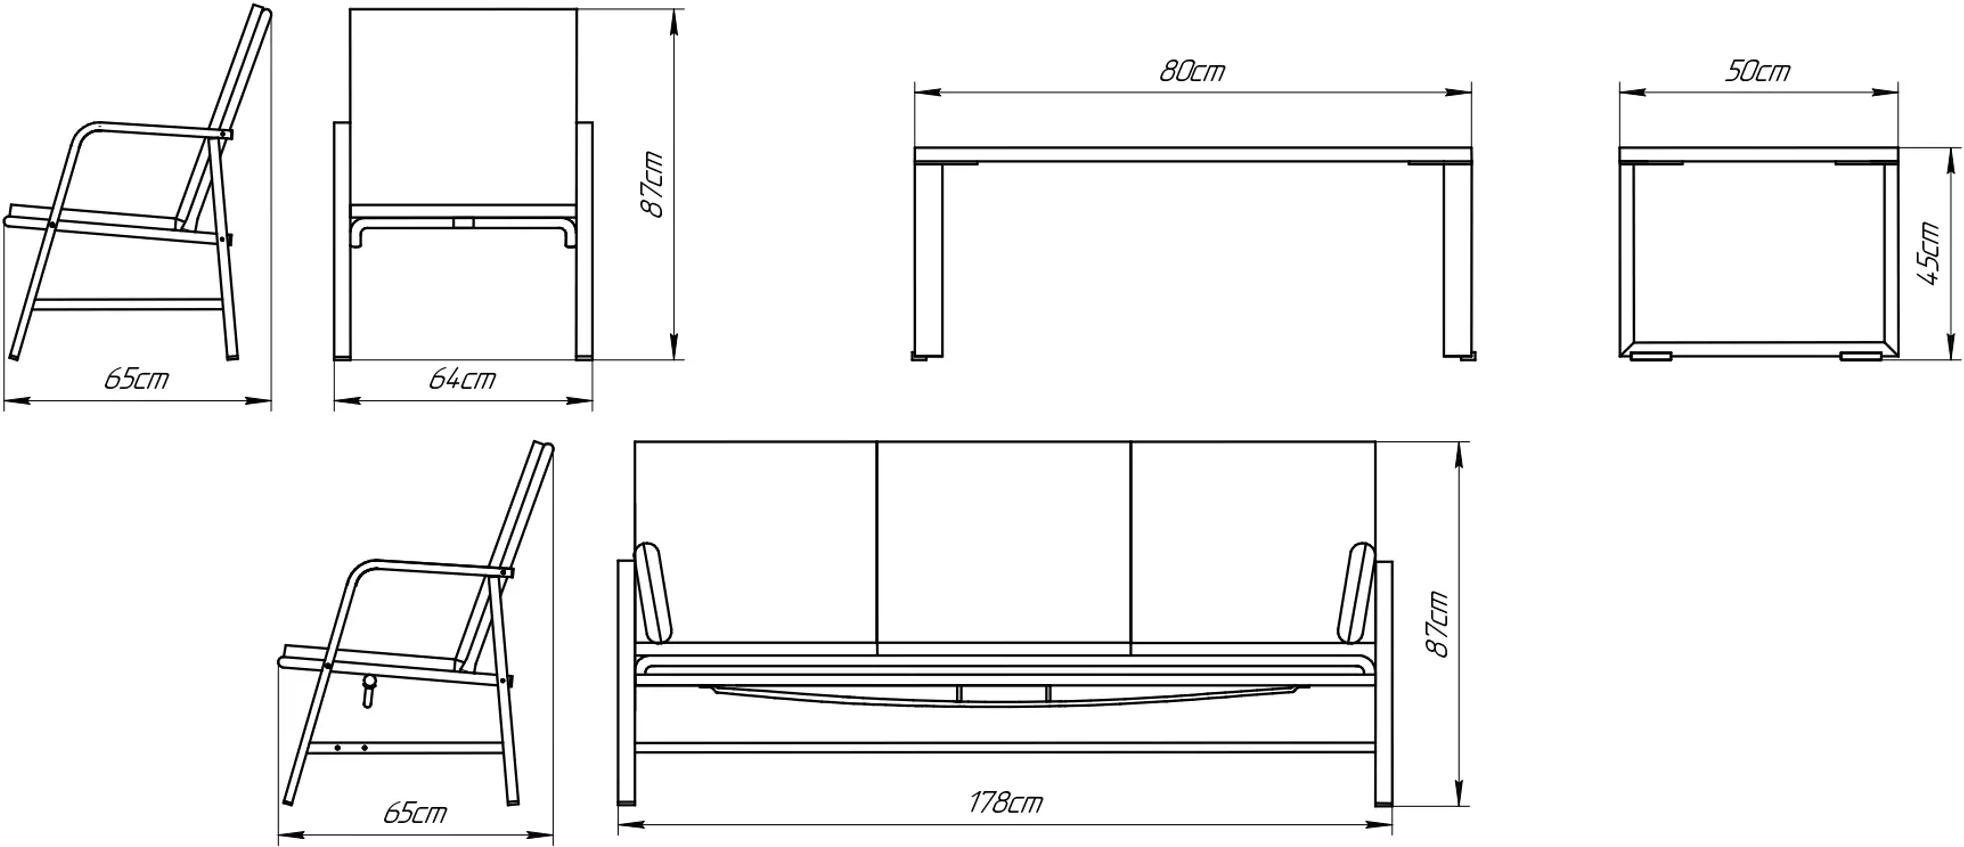 Набор садовой мебели «Глория-2» сталь/хлопок черный/бежевый: стол, диван и 2 кресла